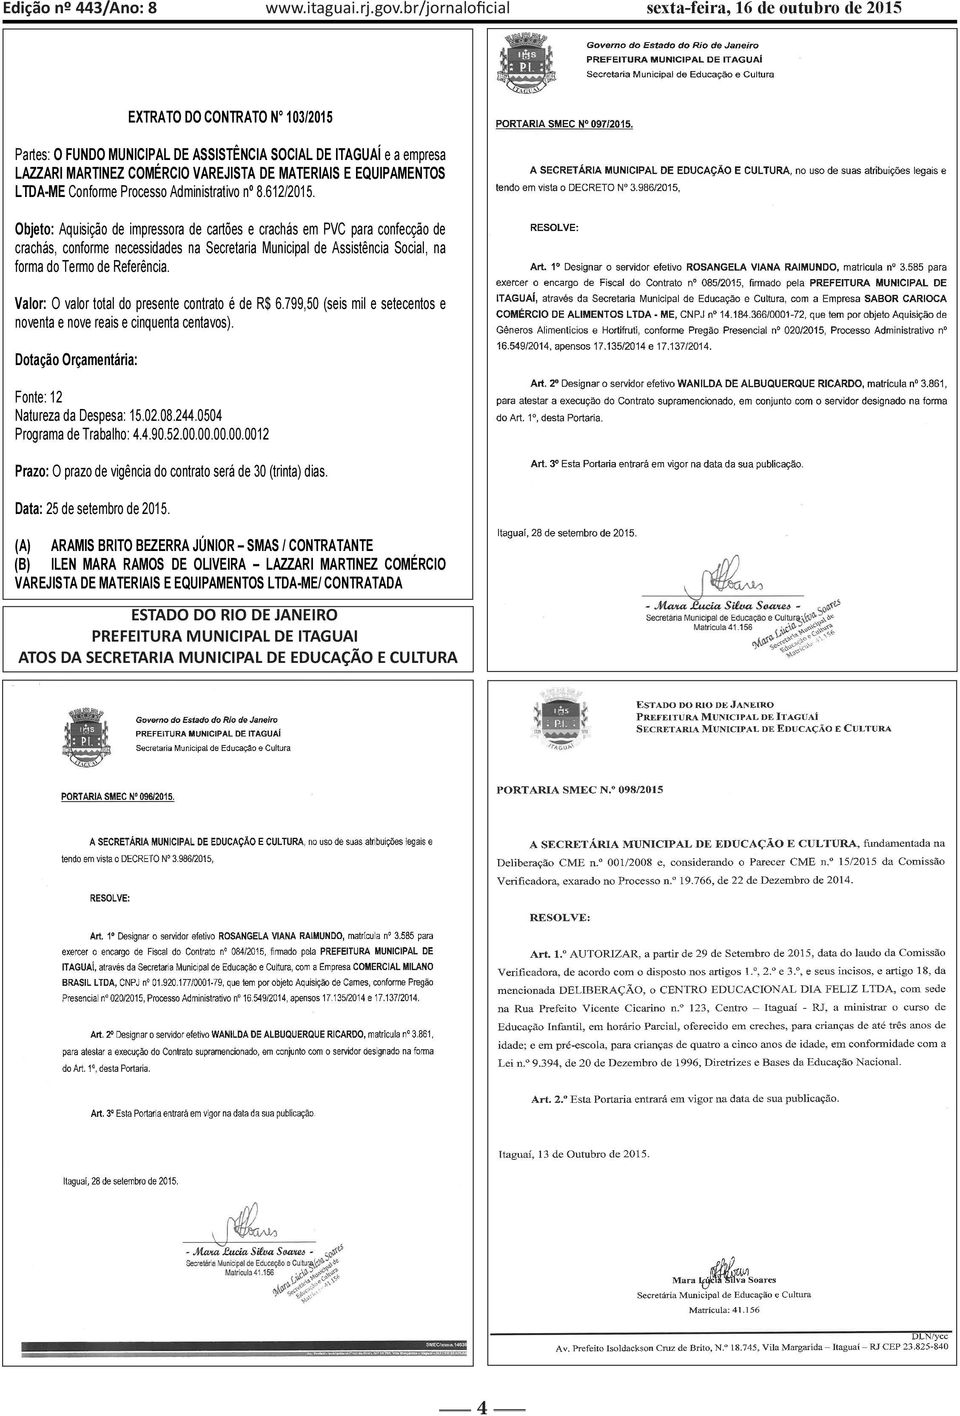 MATERIAIS E EQUIPAMENTOS LTDA-ME Conforme Processo Administrativo nº 8.612/2015.